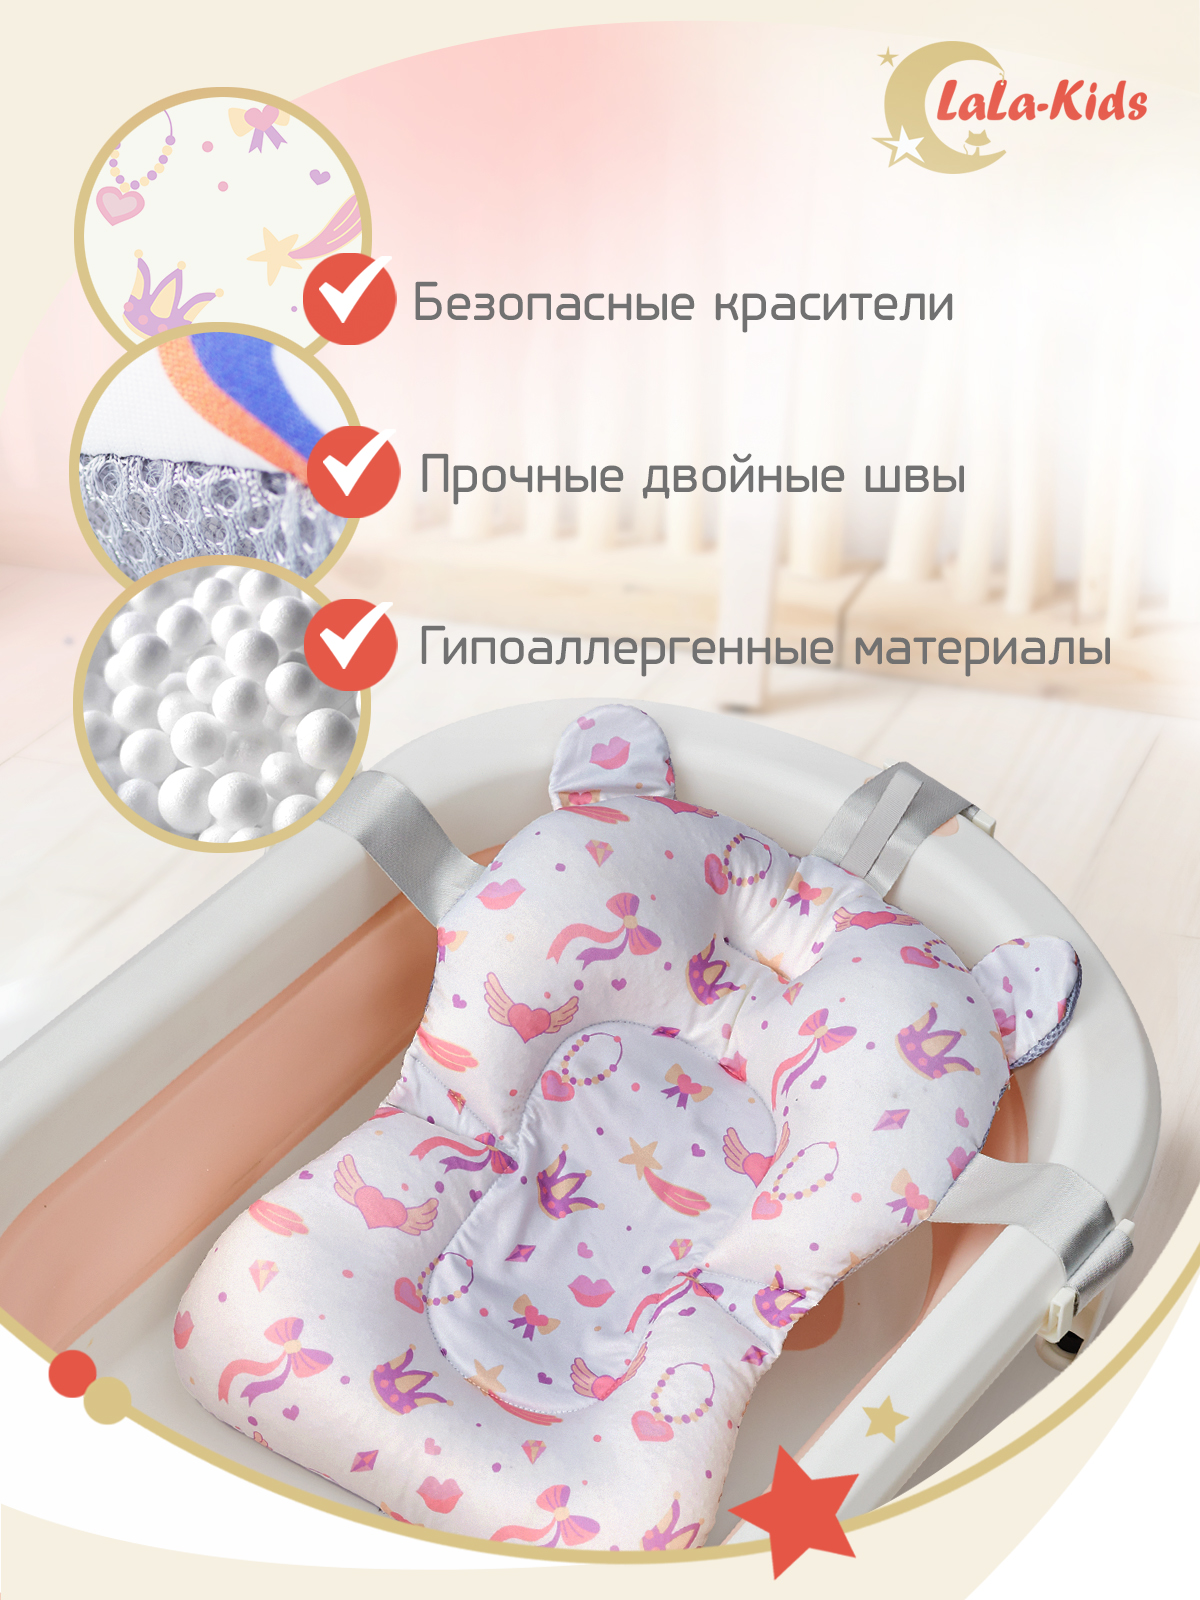 Детская ванночка LaLa-Kids складная с матрасиком персиковым в комплекте - фото 14